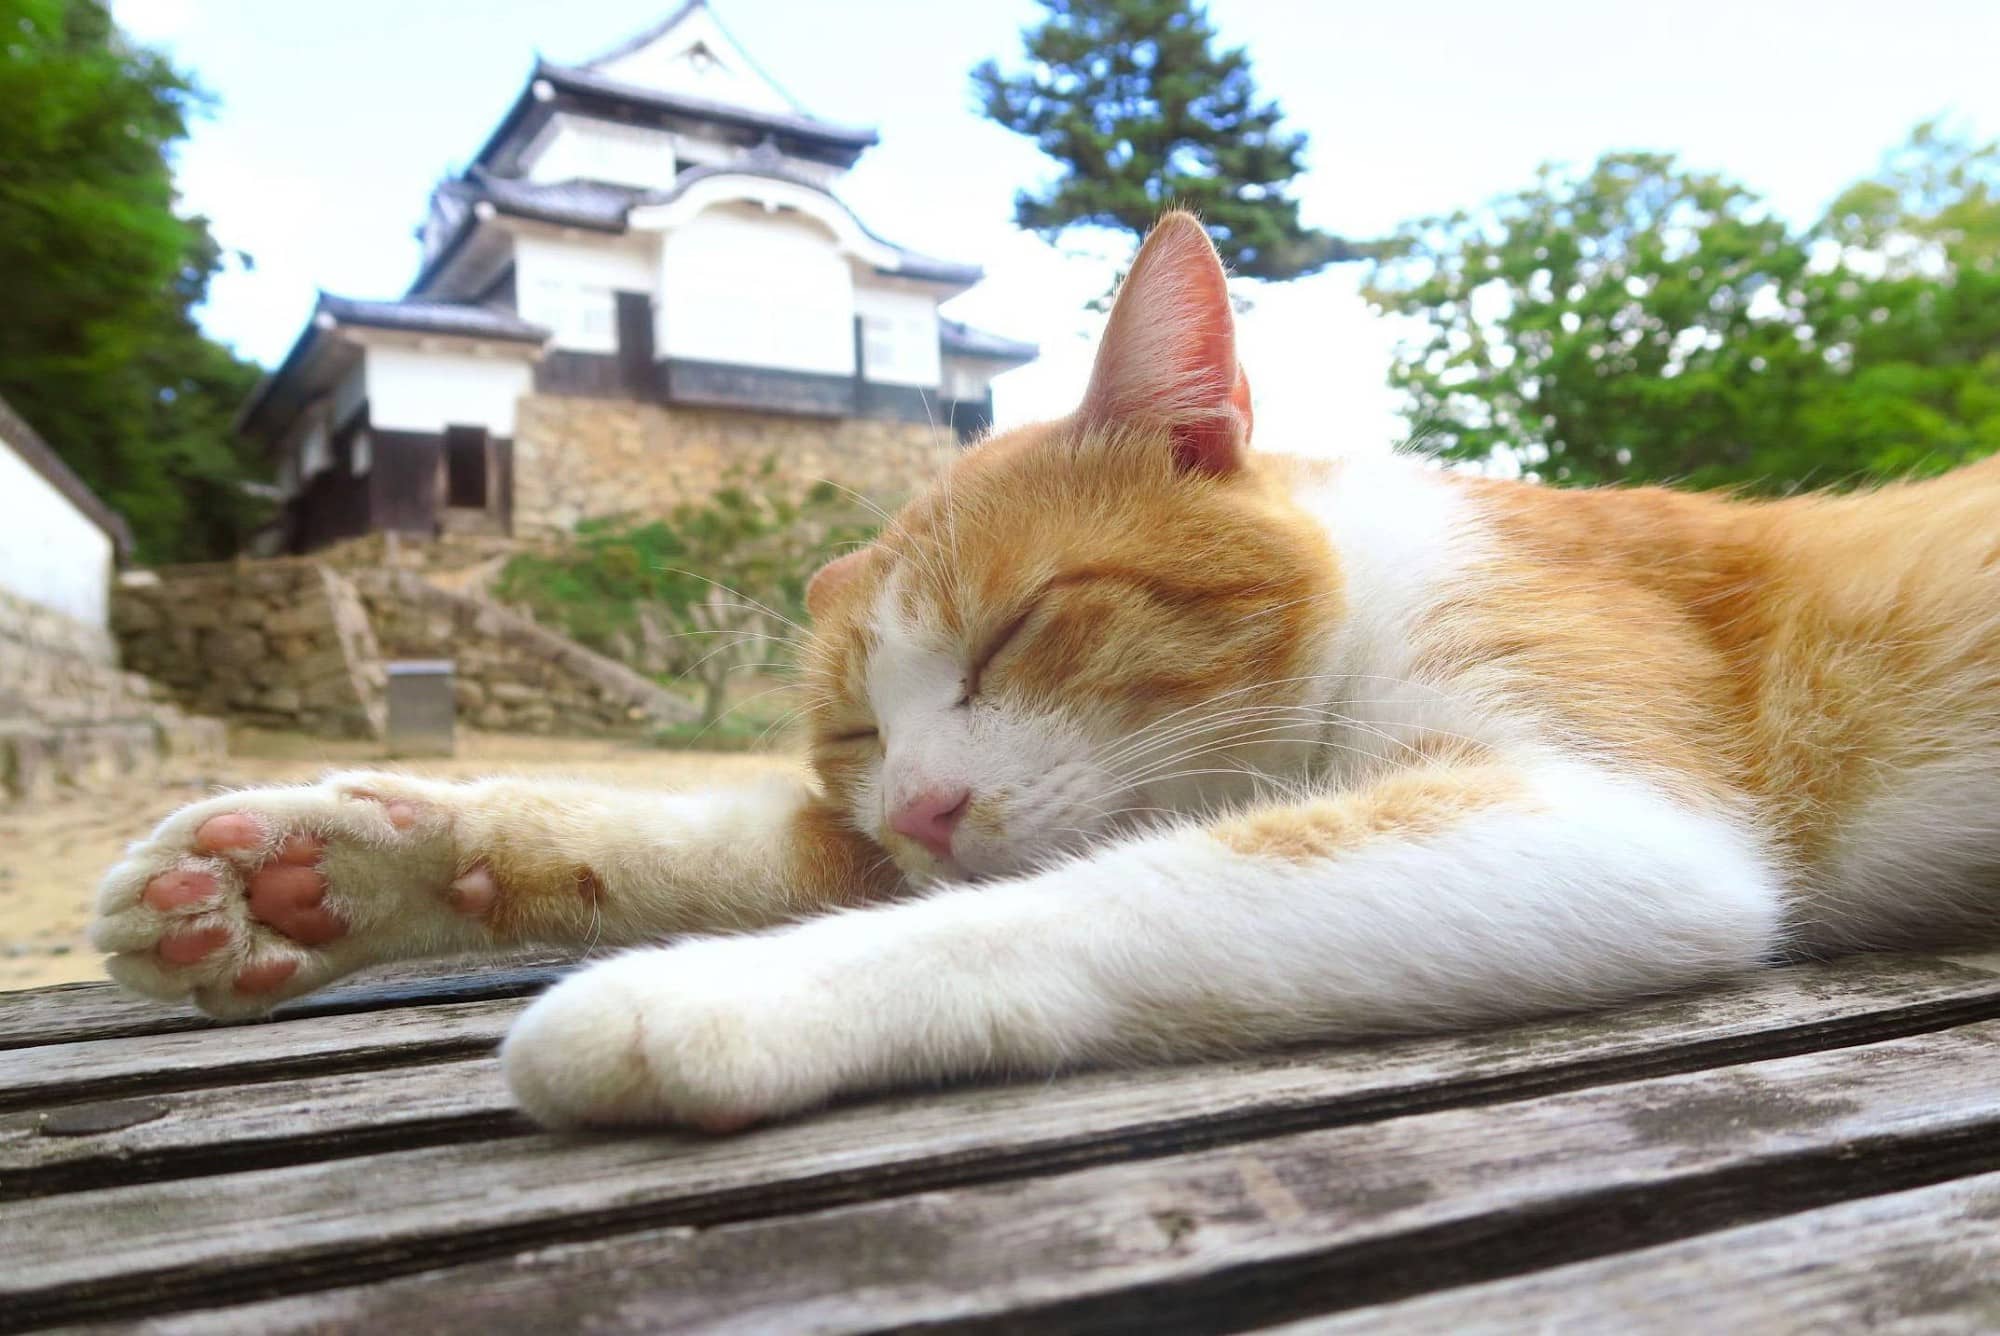 Chú mèo đi lạc được phong làm chúa tể lâu đài cổ ở Nhật Bản, thu hút du khách nườm nượp đến thăm - Ảnh 3.